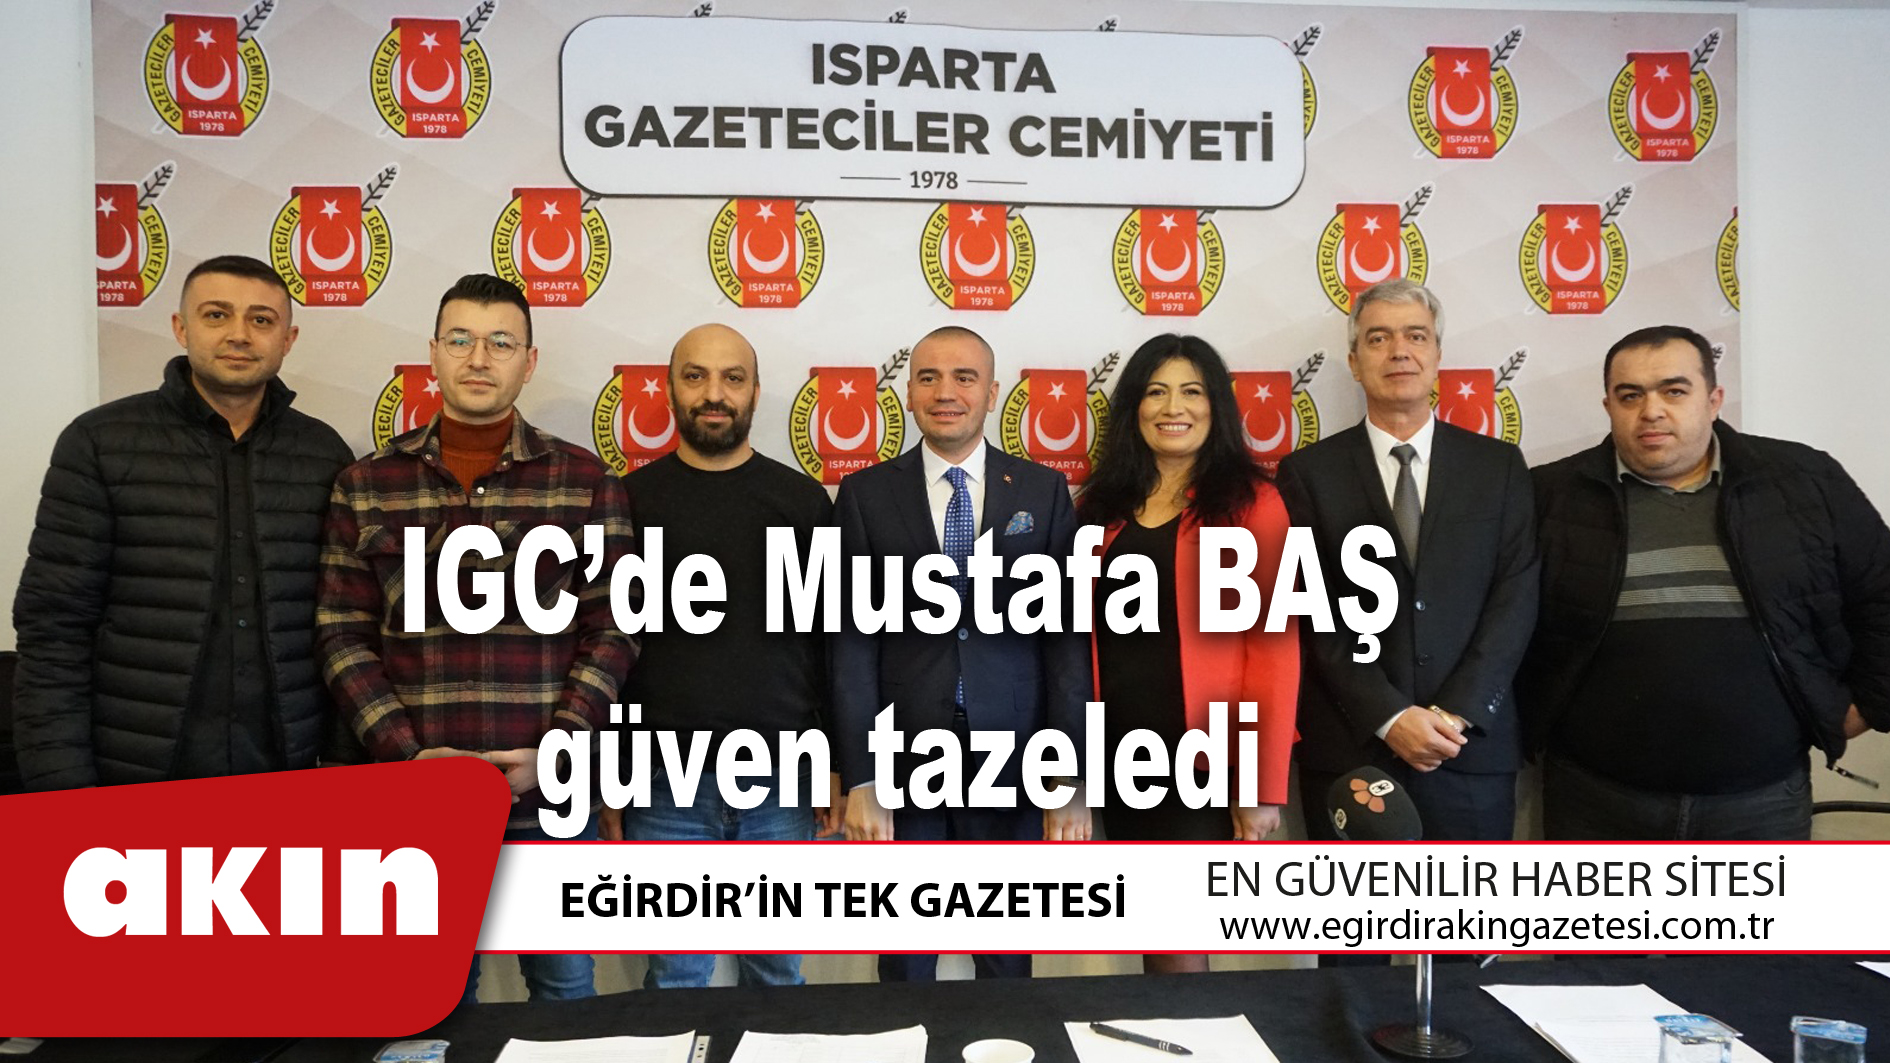 IGC’de Mustafa BAŞ güven tazeledi